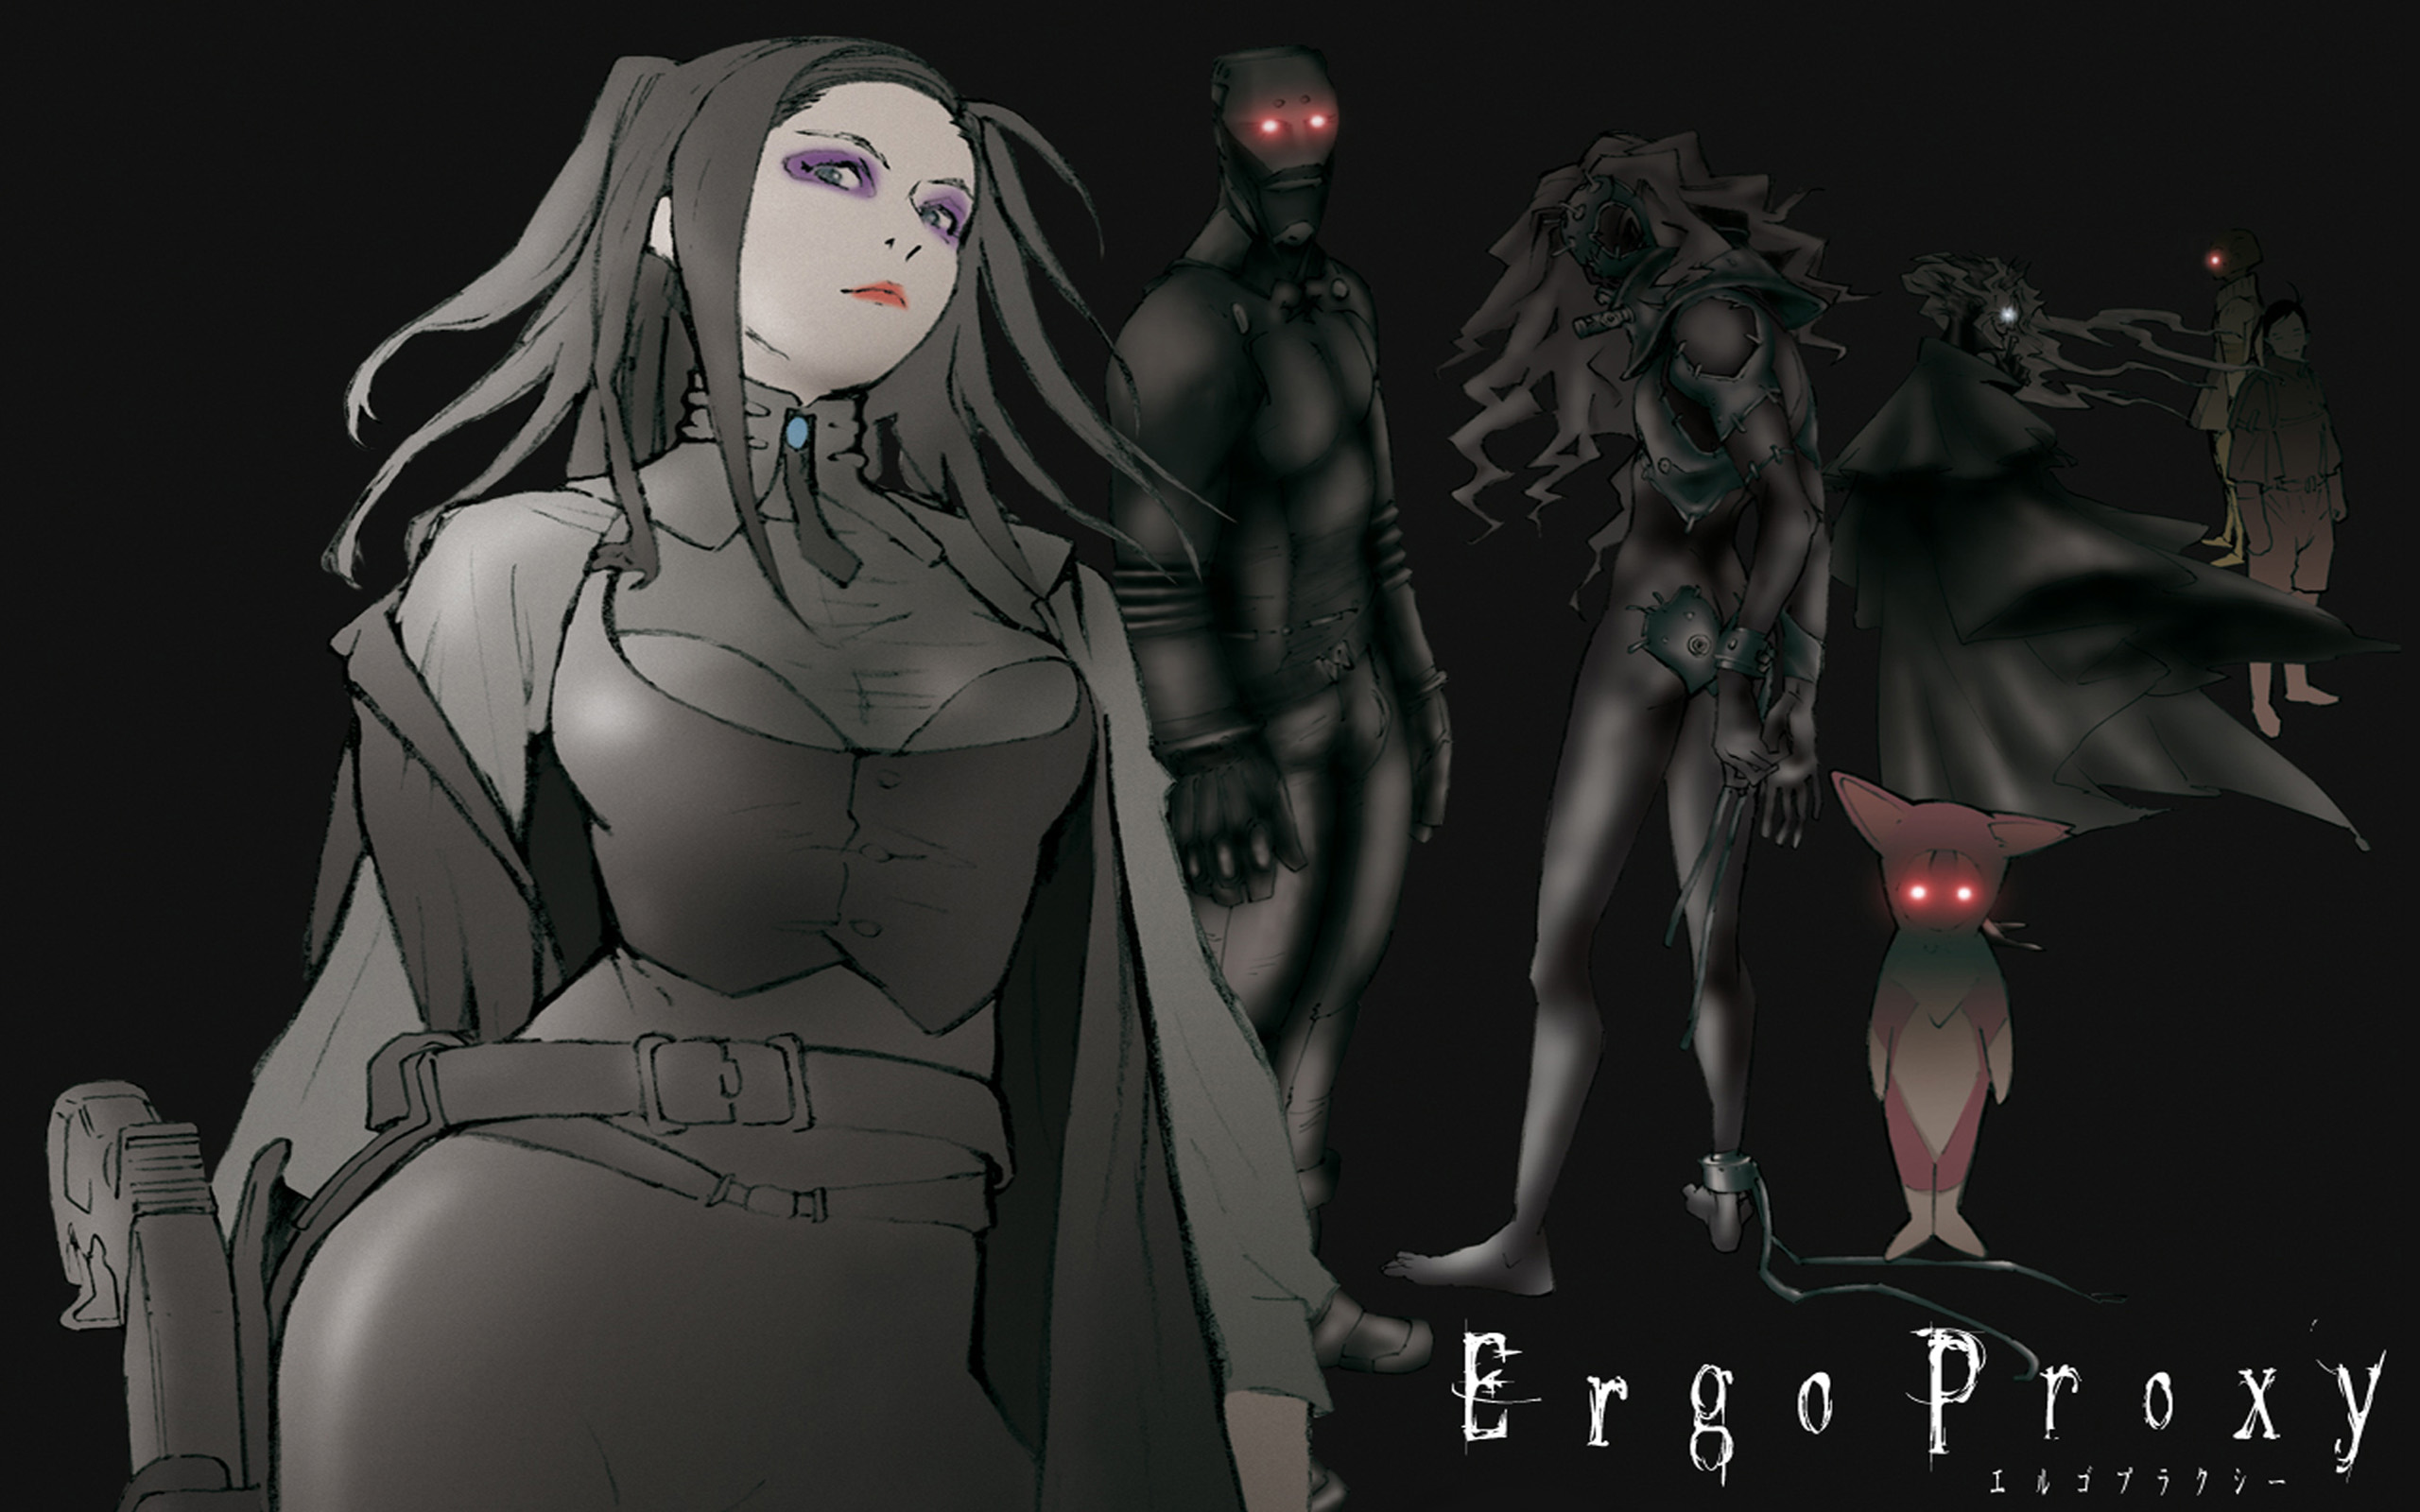 Anime Ergo Proxy 2560x1600